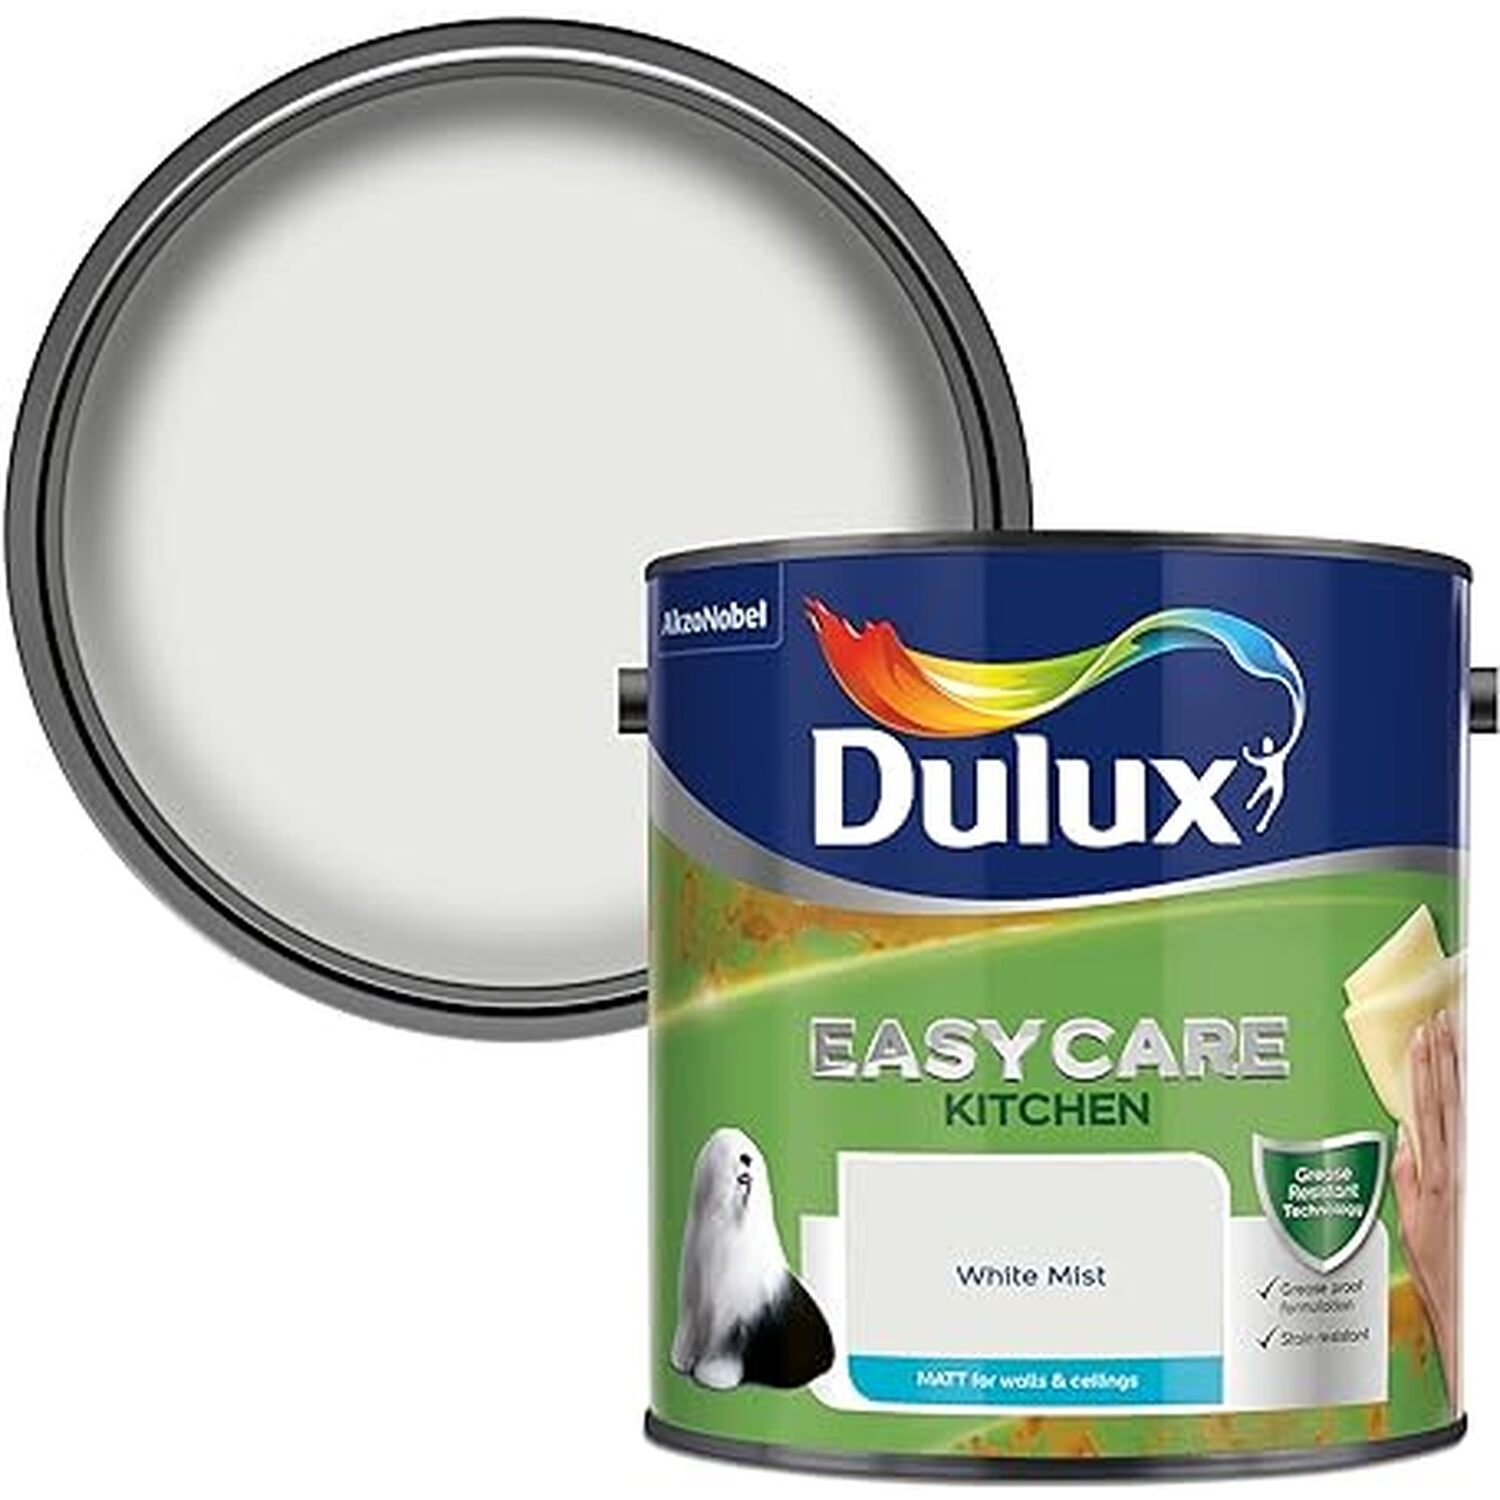 Dulux Easycare Kitchen White Mist Matt Emulsion Paint 2.5L Image 1